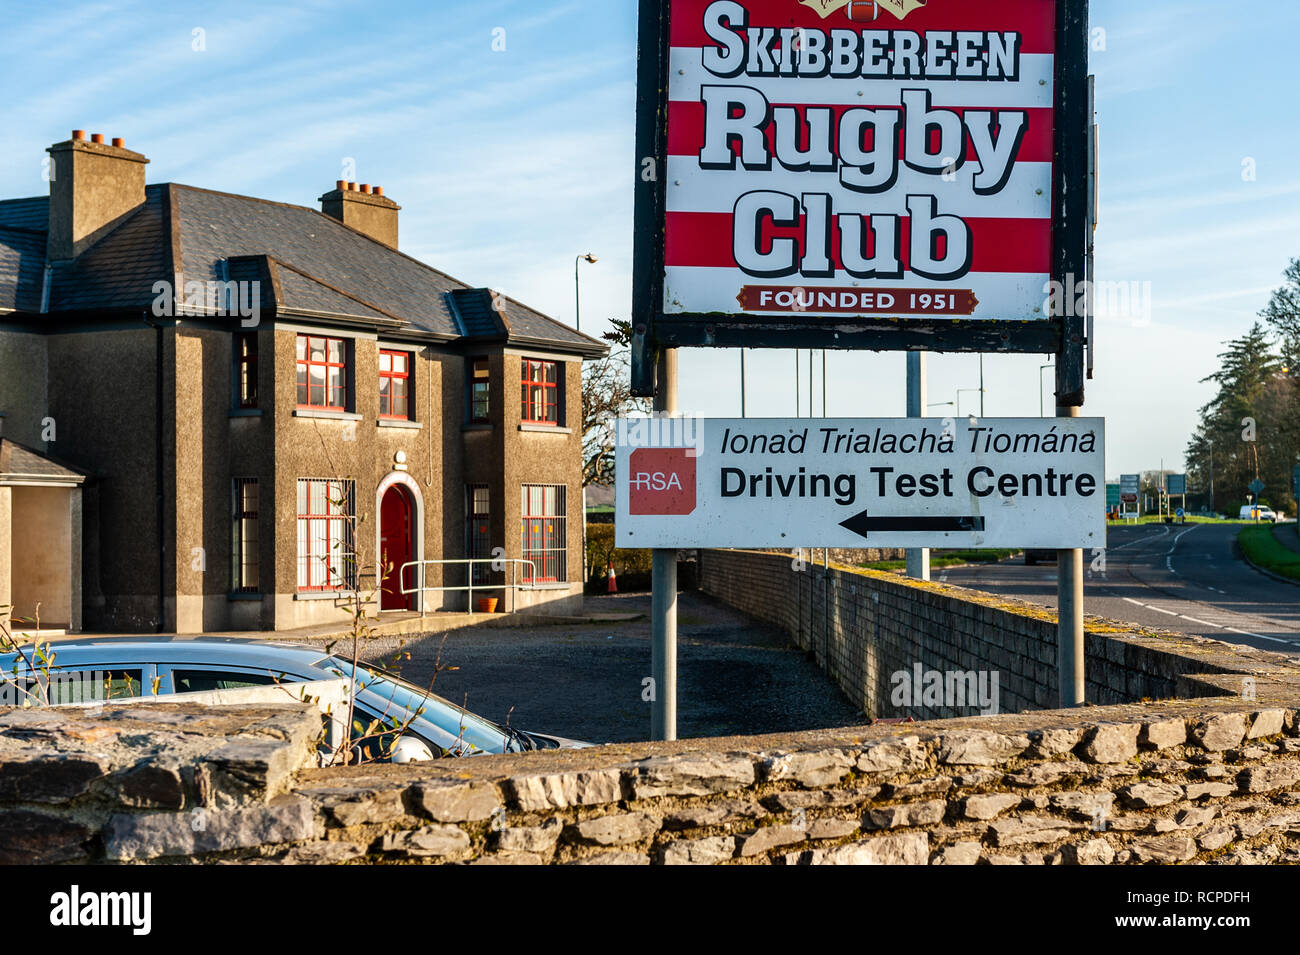 Irish Road Safety Authority treibenden Test Center in Skibbereen Rugby Club, Skibbereen, West Cork, Irland mit kopieren. Stockfoto